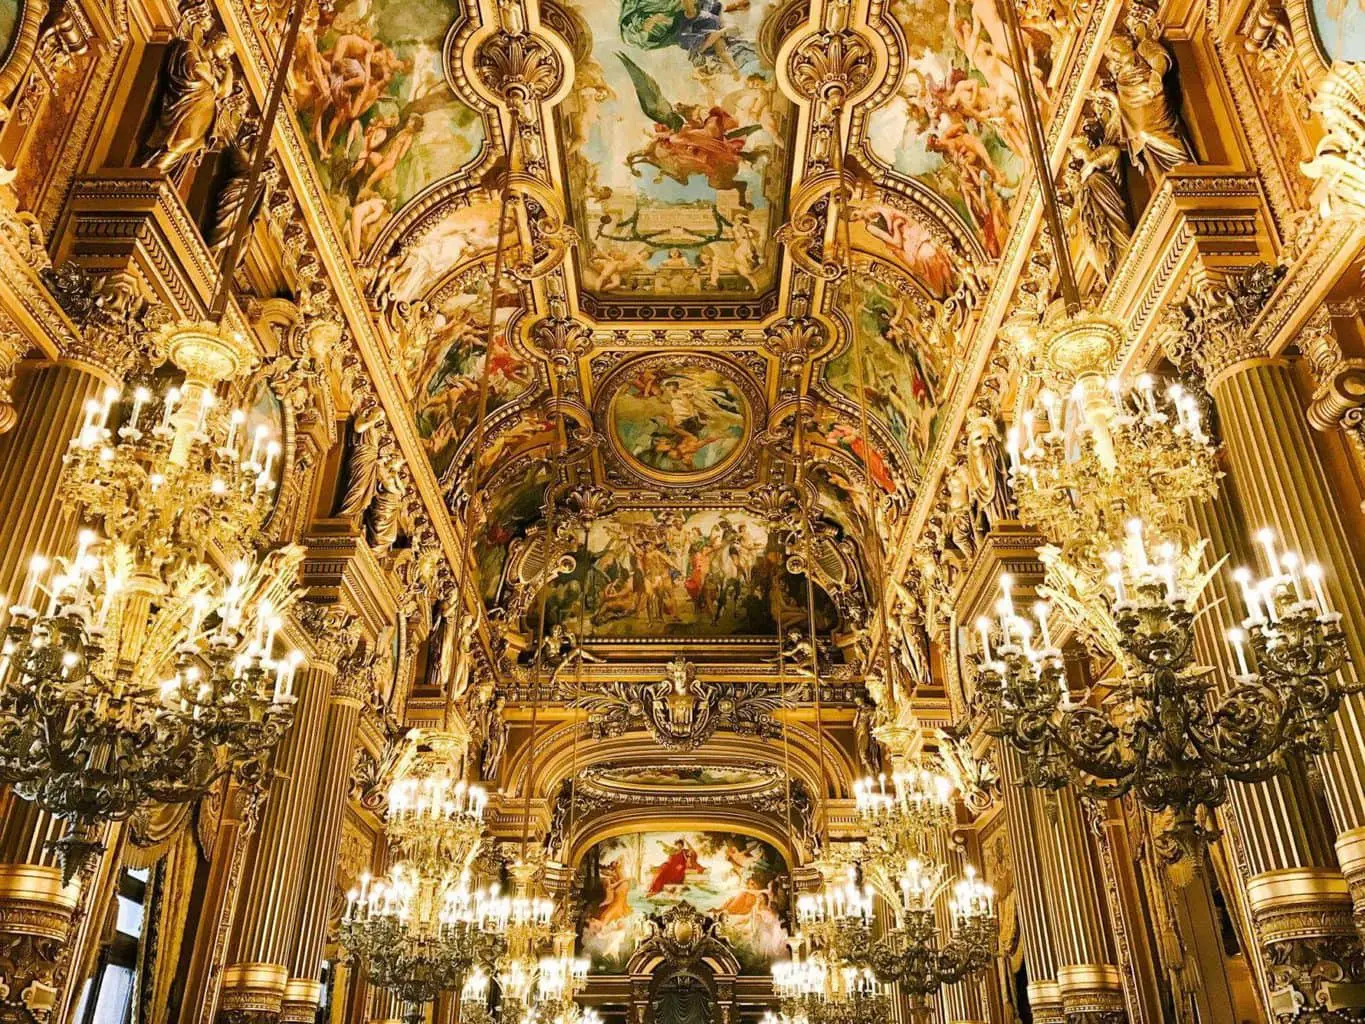 Palais Garnier Paris